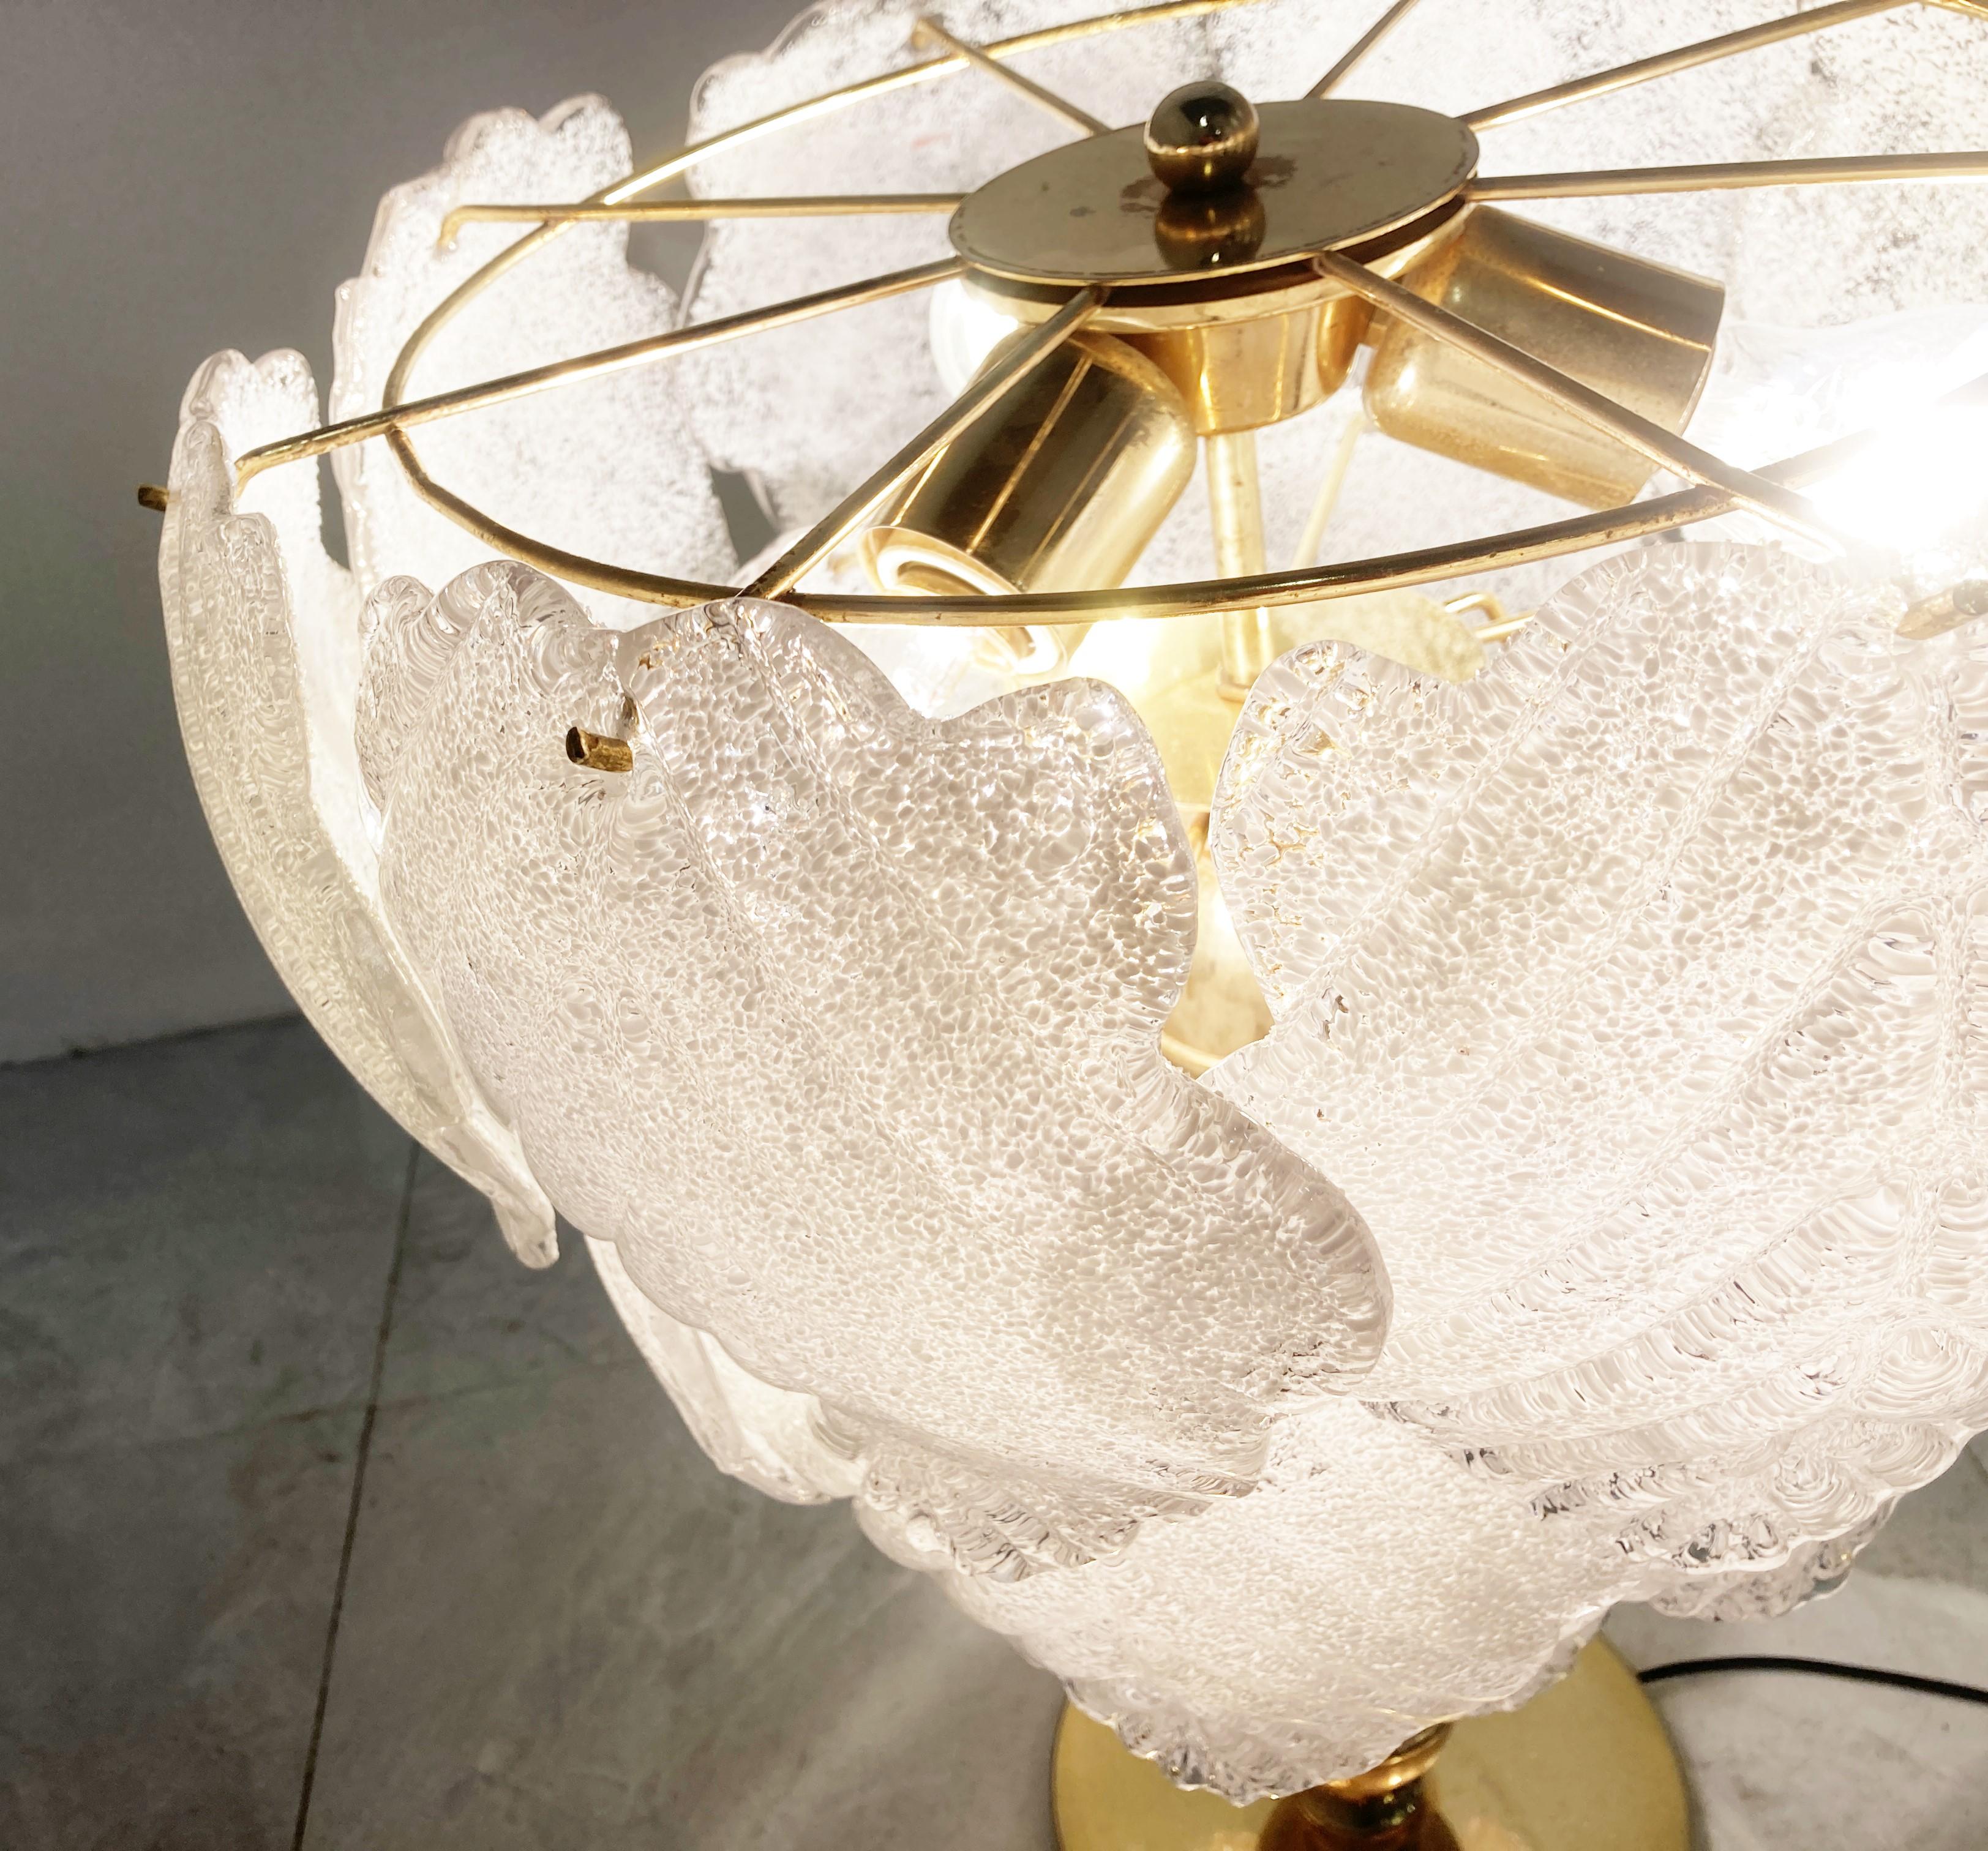 Vintage-Tischlampe aus Messing mit handgefertigten Murano-Mattglasblättern.

Die Lampe sieht schön aus und gibt ein angenehmes, weiches Licht ab.

Sehr guter Zustand.

Geprüft und einsatzbereit für E27-Glühbirnen.

1970er Jahre -